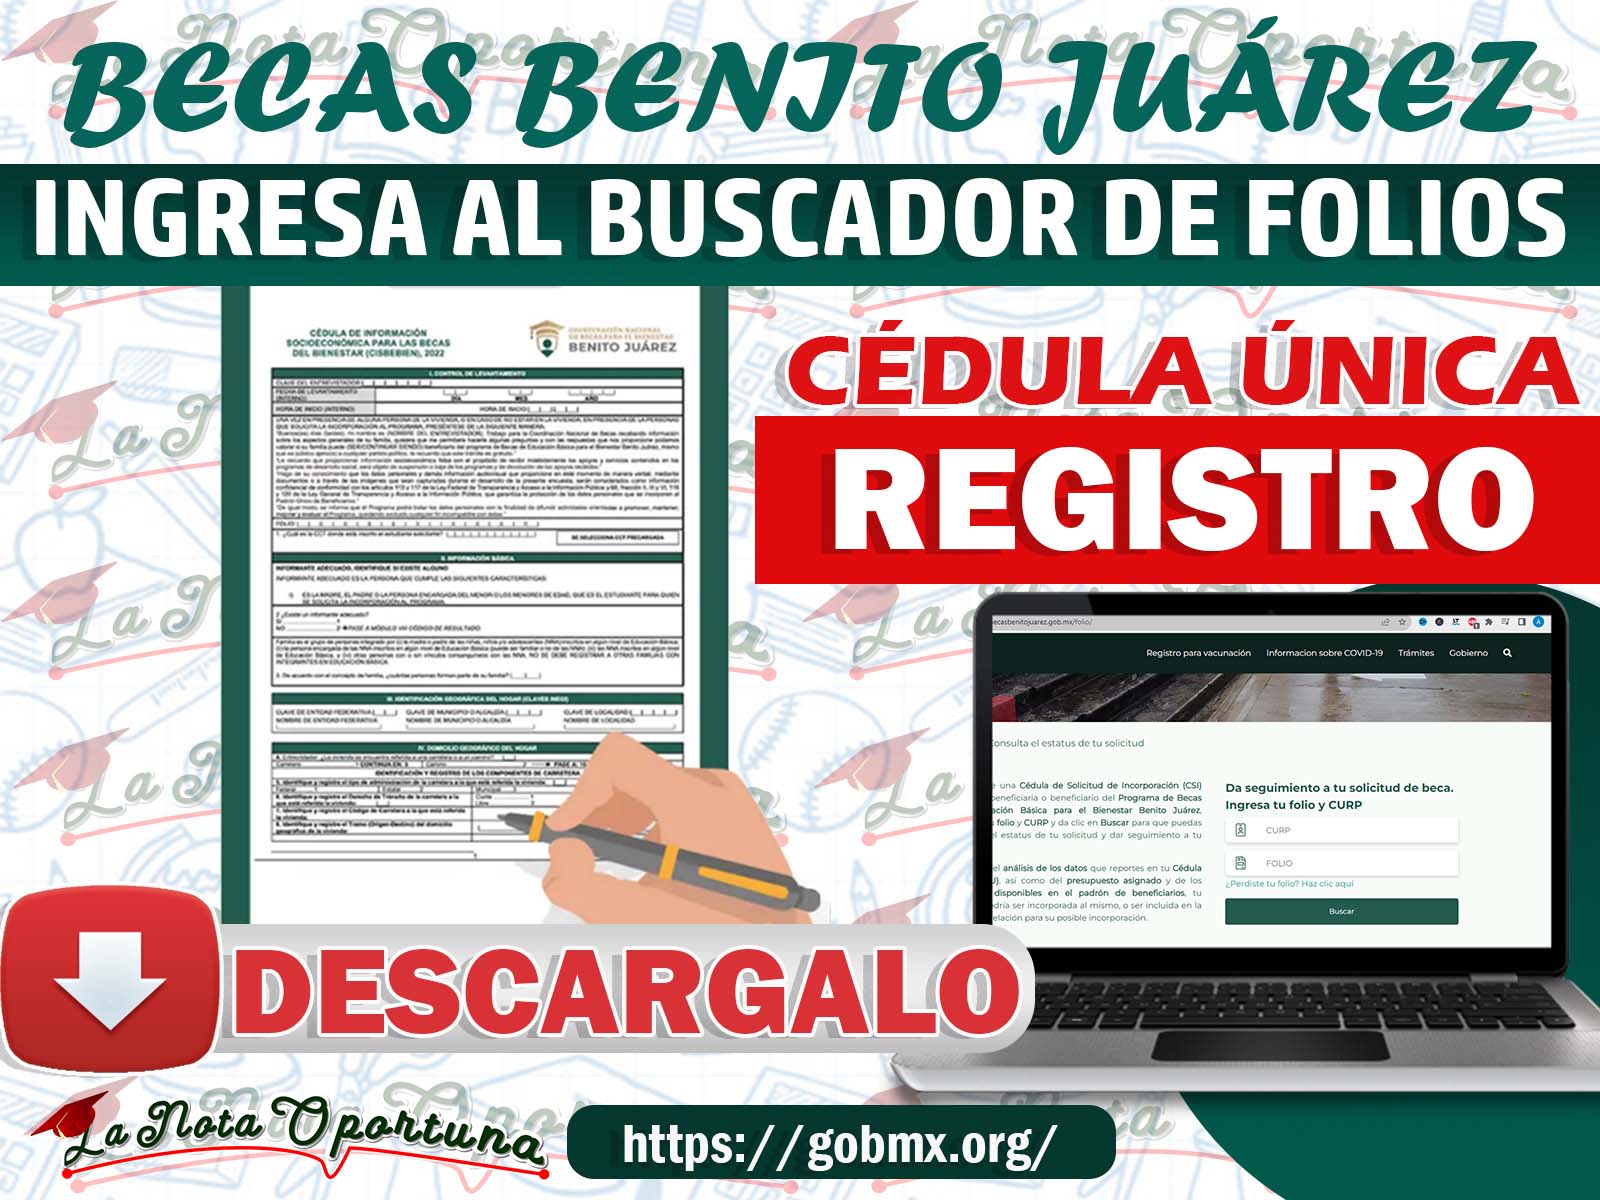 Atención Alumnos ¡Así Puedes Descargar la Cédula Única! Beneficiaros de las Becas Benito Juárez